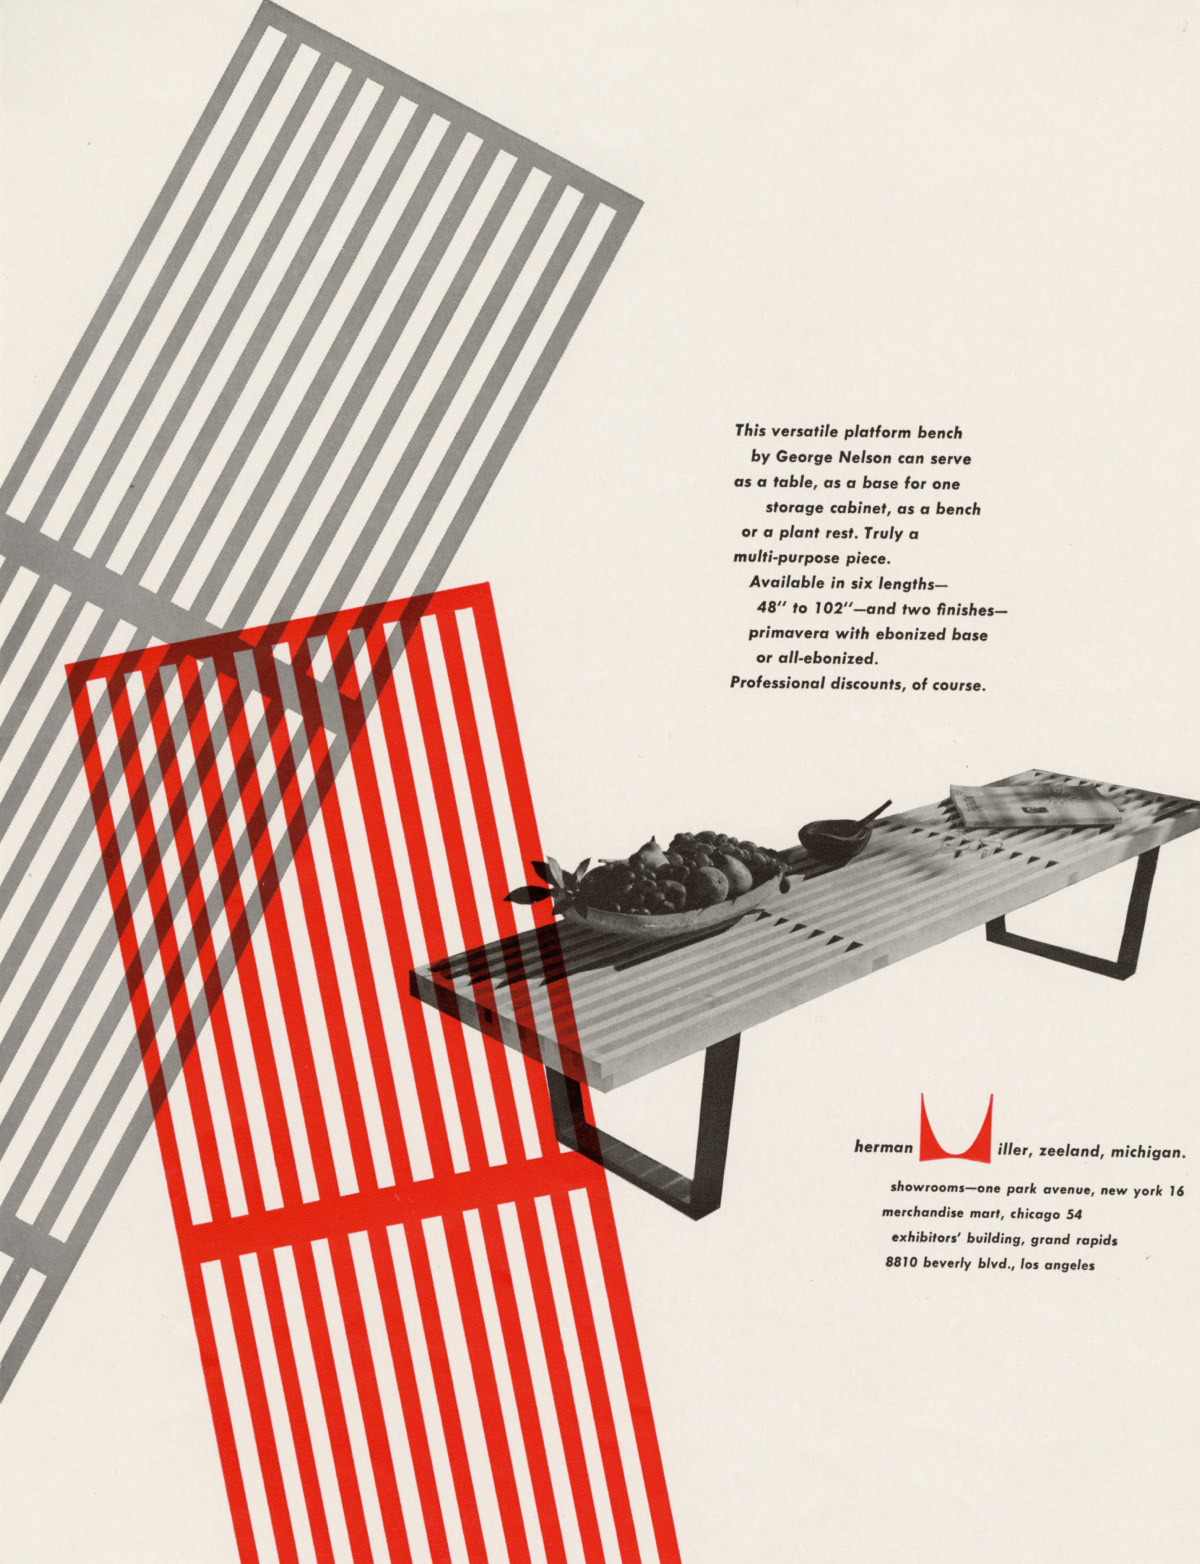 Anúncio com gráficos arrojados em cinza e vermelho na forma do assento do banco Nelson, à esquerda de um texto promocional e uma imagem de um banco Nelson em ângulo apoiando pequenos objetos decorativos.